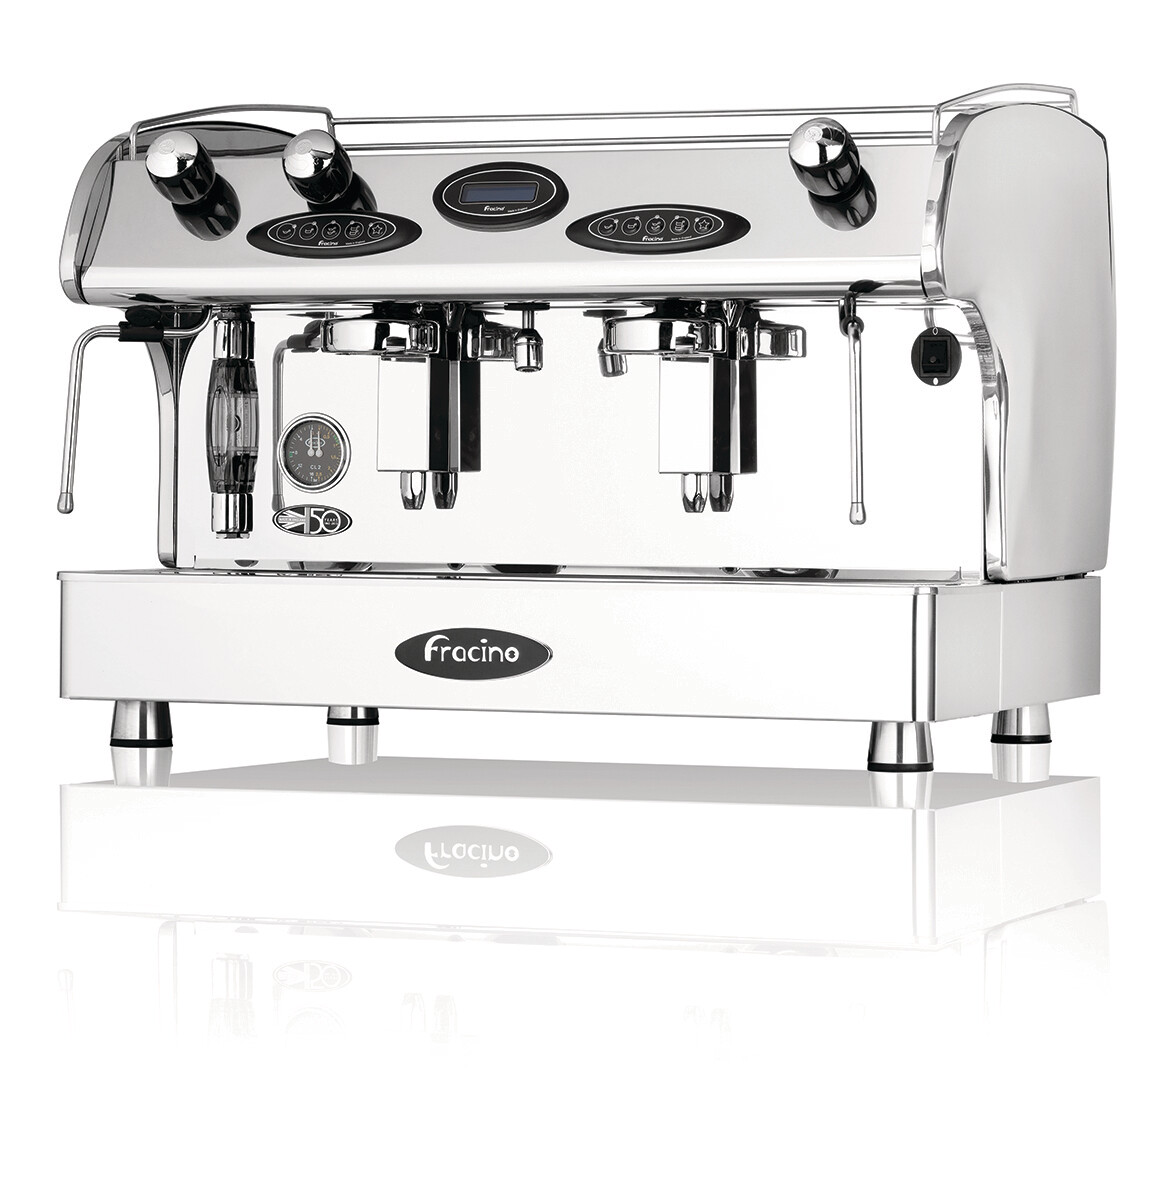 Fracino Romano Commercial Espresso Machine